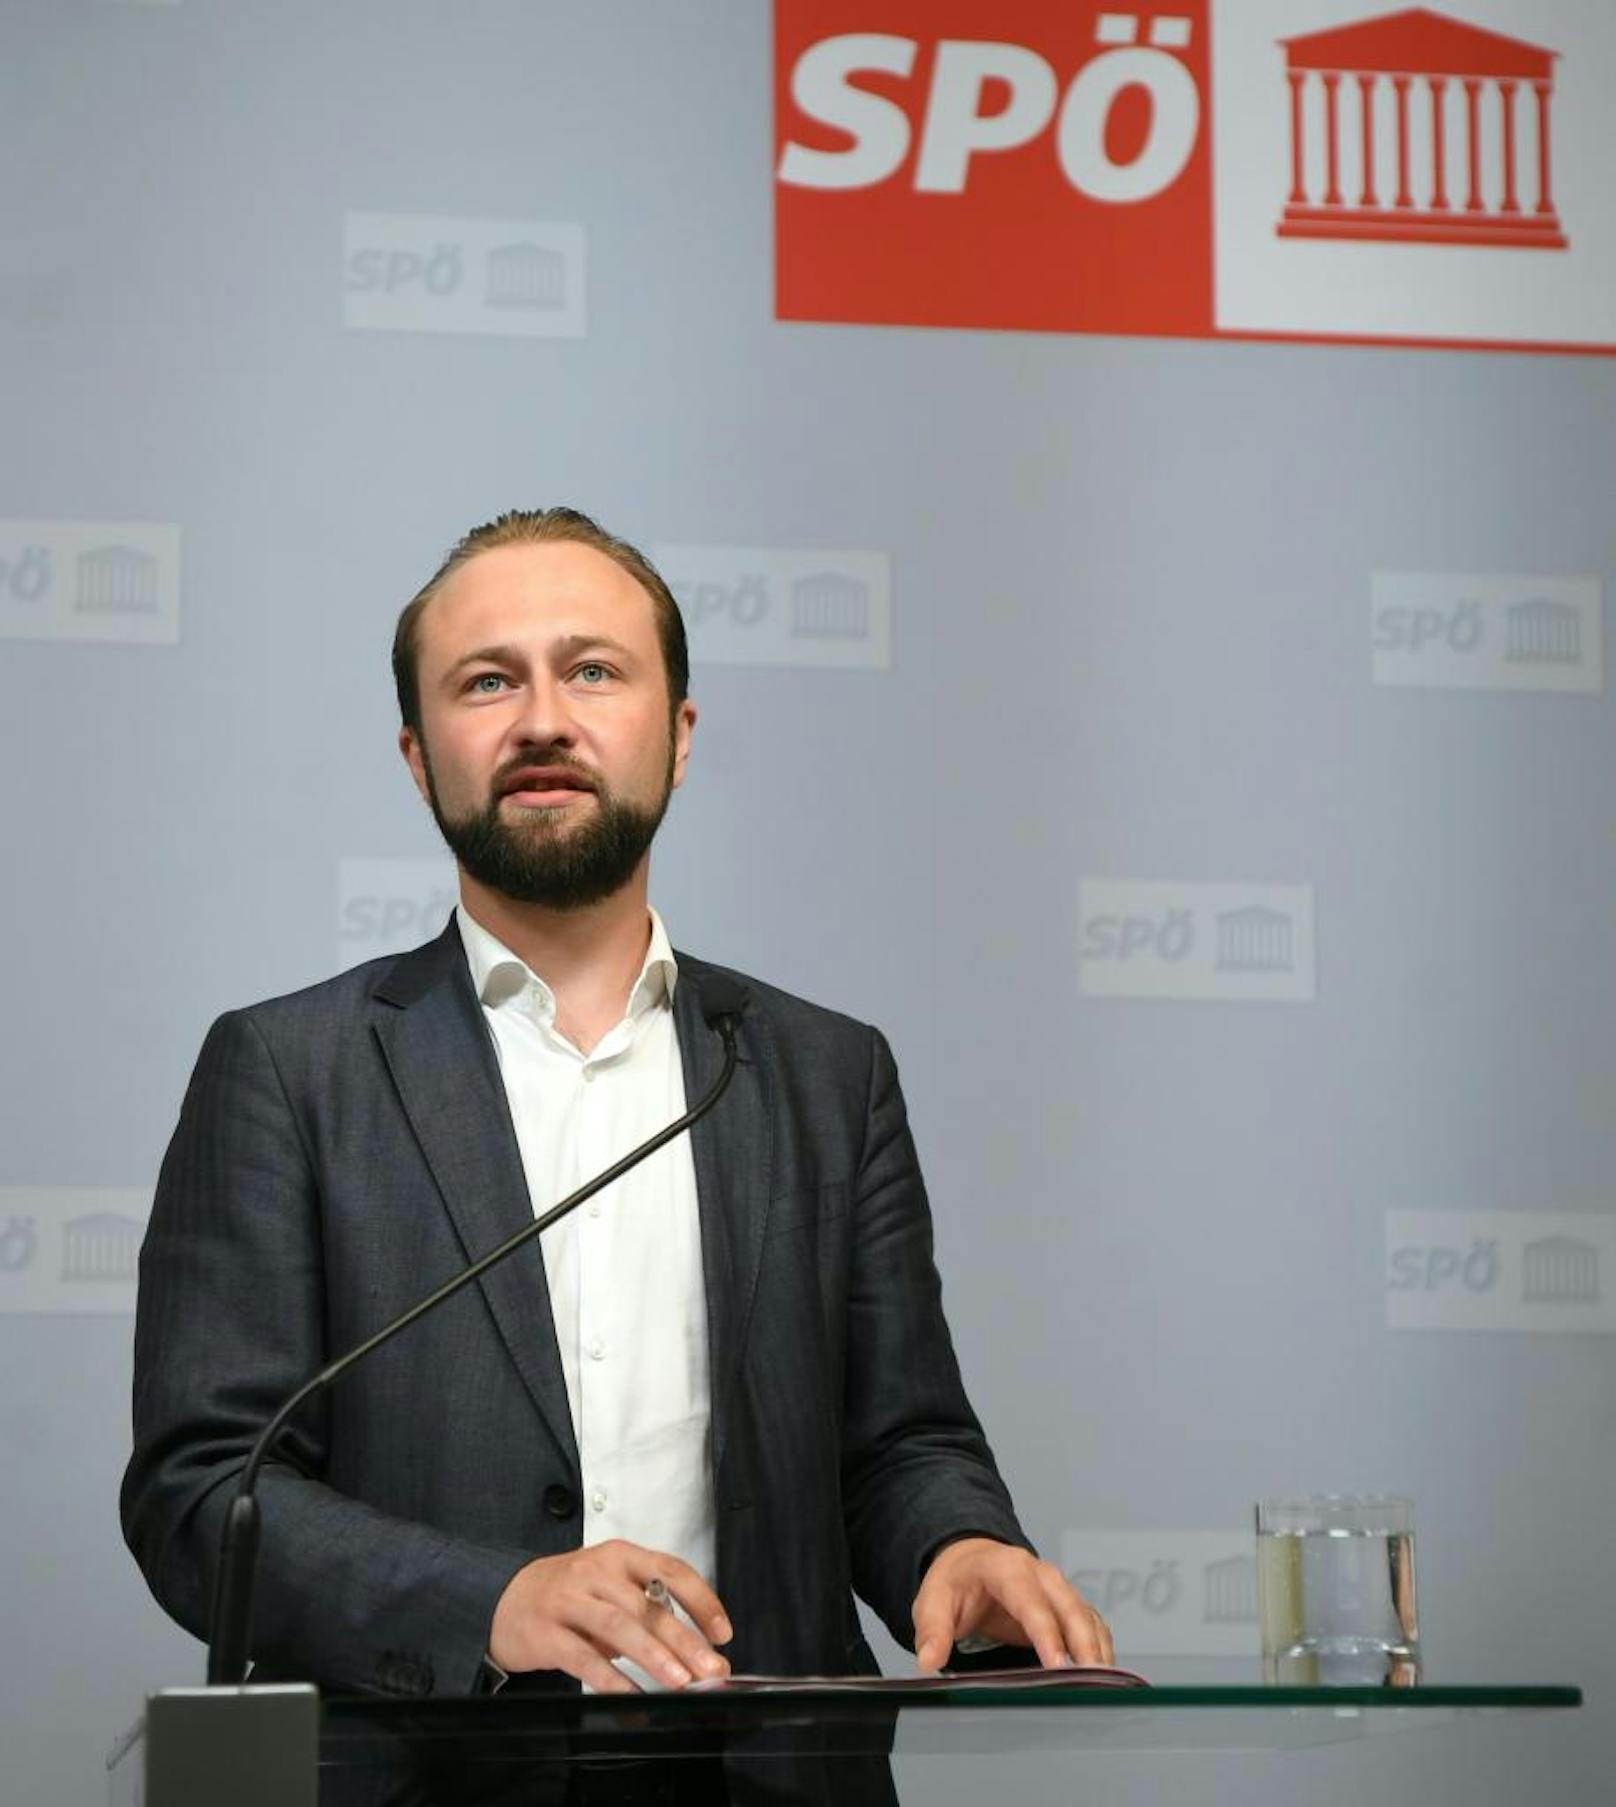 Der 32-Jährige ist SPÖ-Spitzenkandidat für den obersteirischen Wahlkreis, strebt aber keine Funktion in der steirischen Landespolitik an.